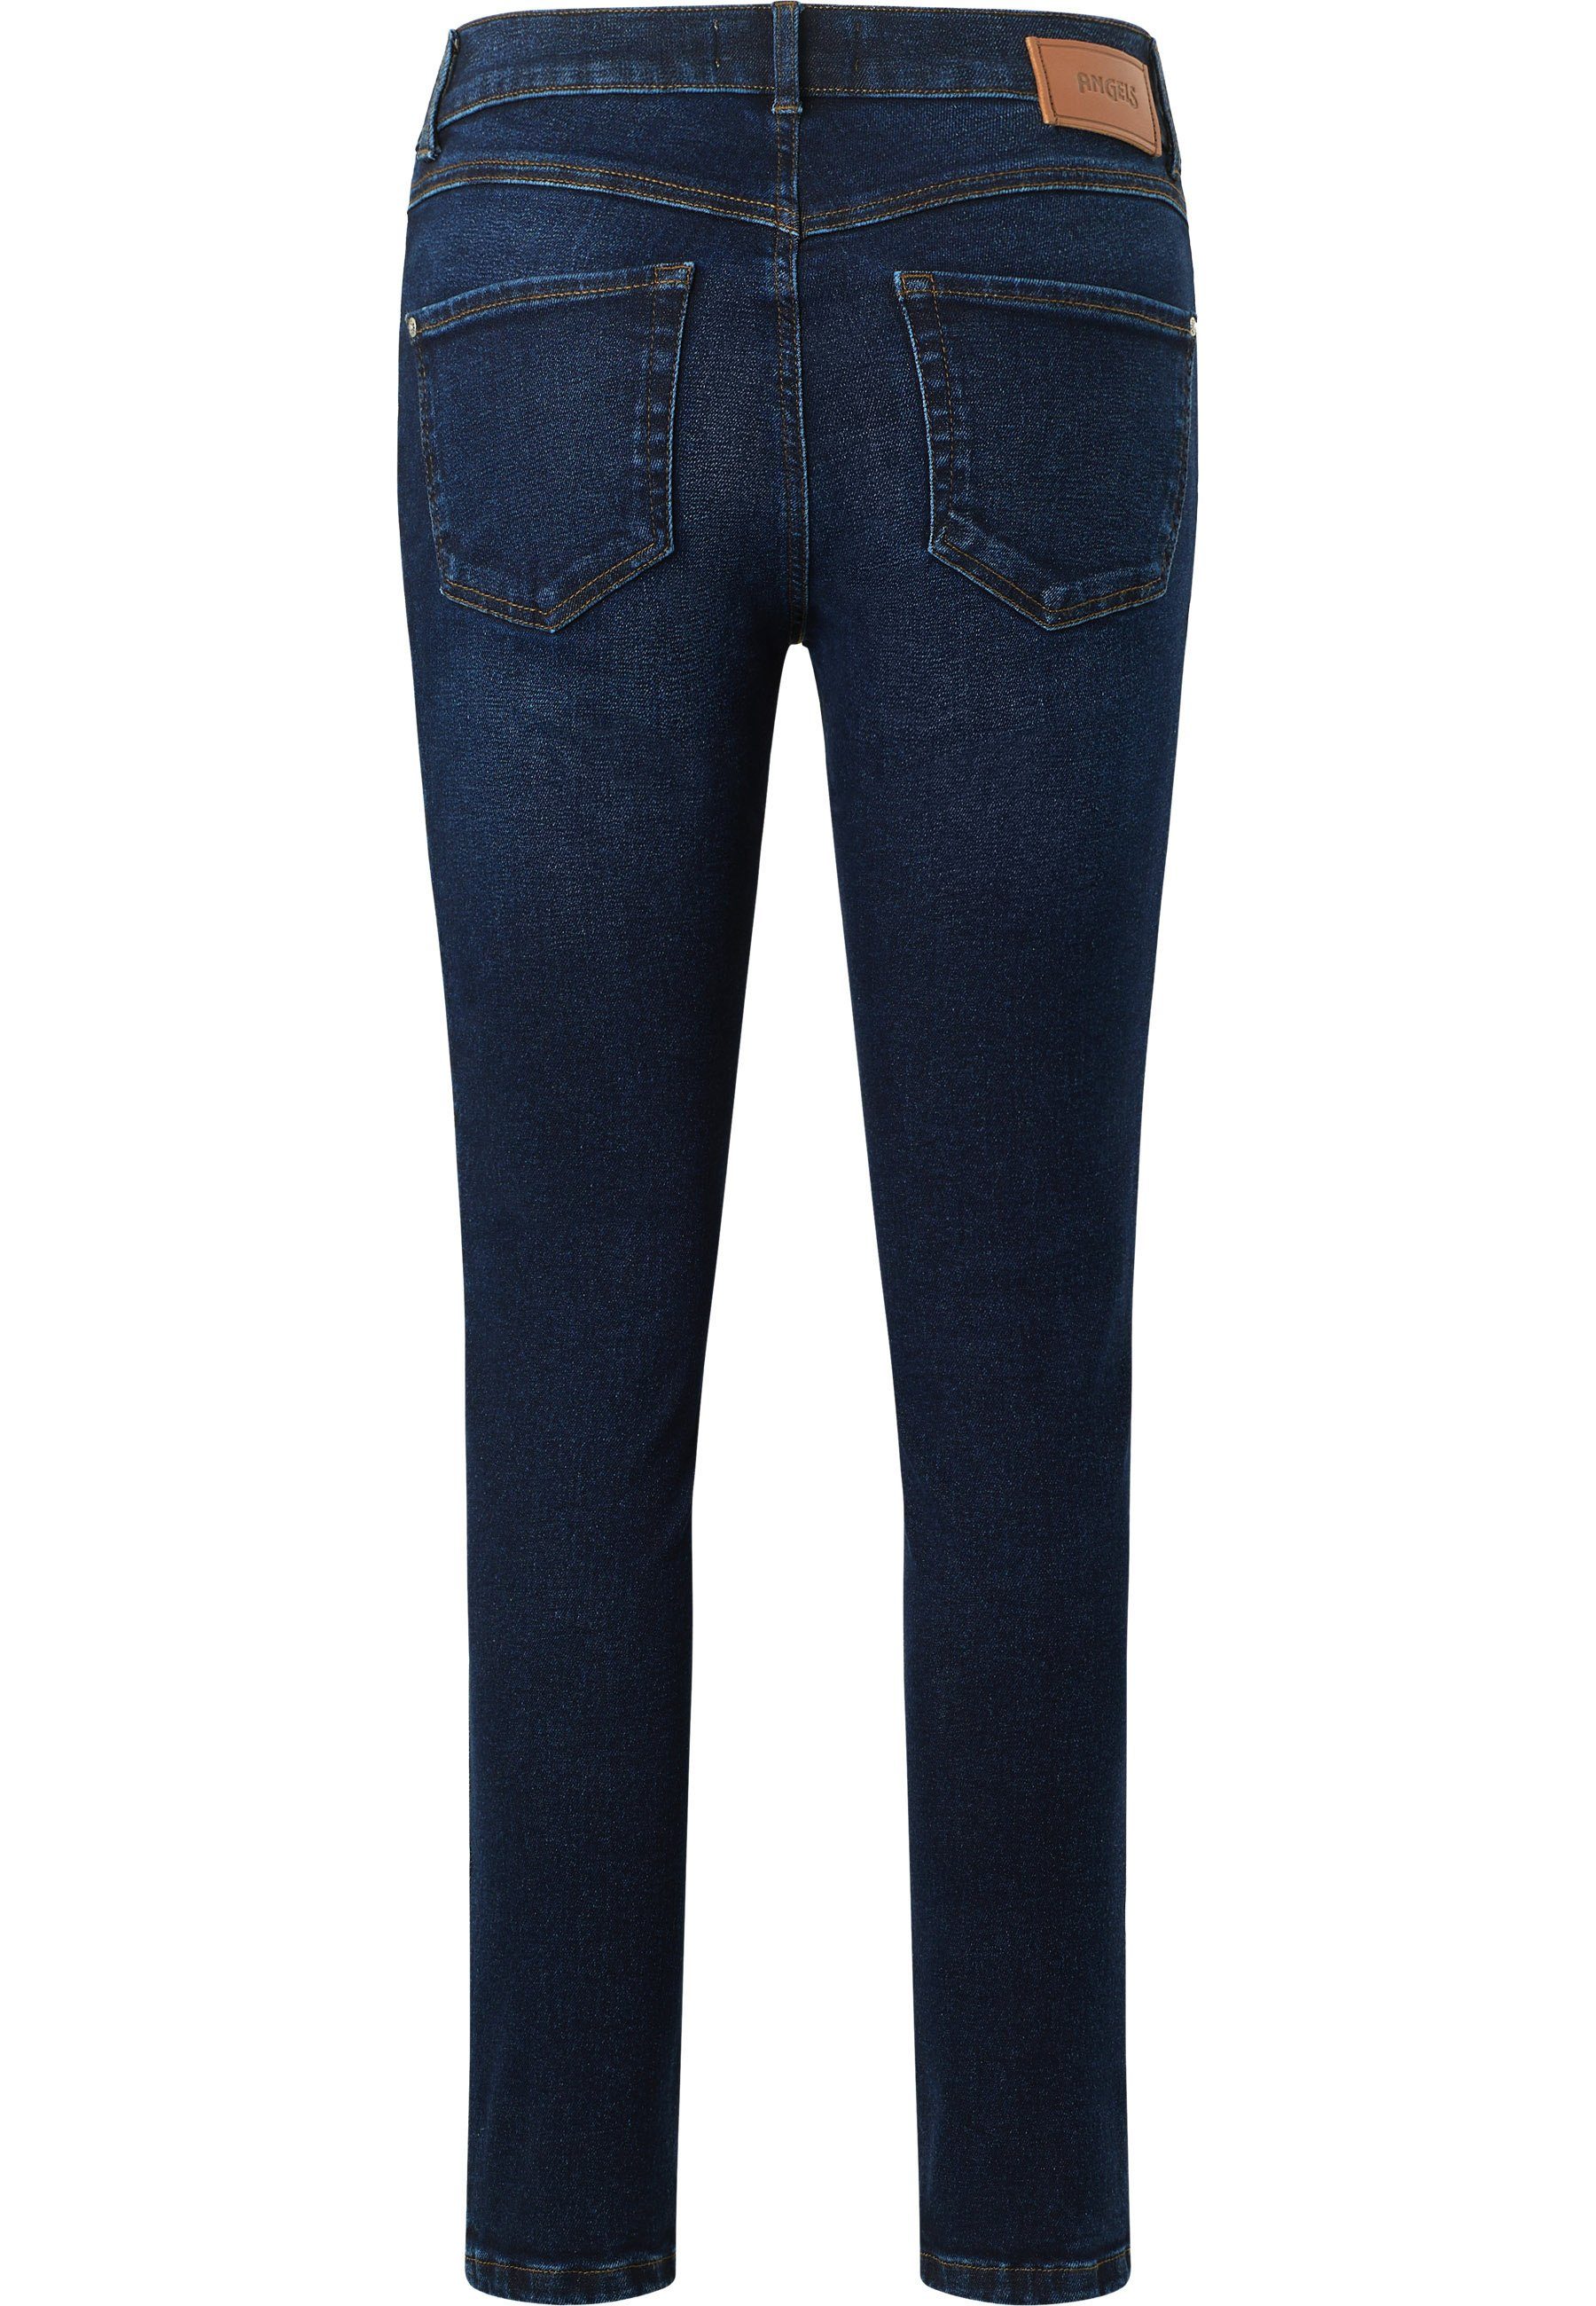 Jeans Seam Vintage Reißverschluss dunkellila Ornella Slim-fit-Jeans mit ANGELS